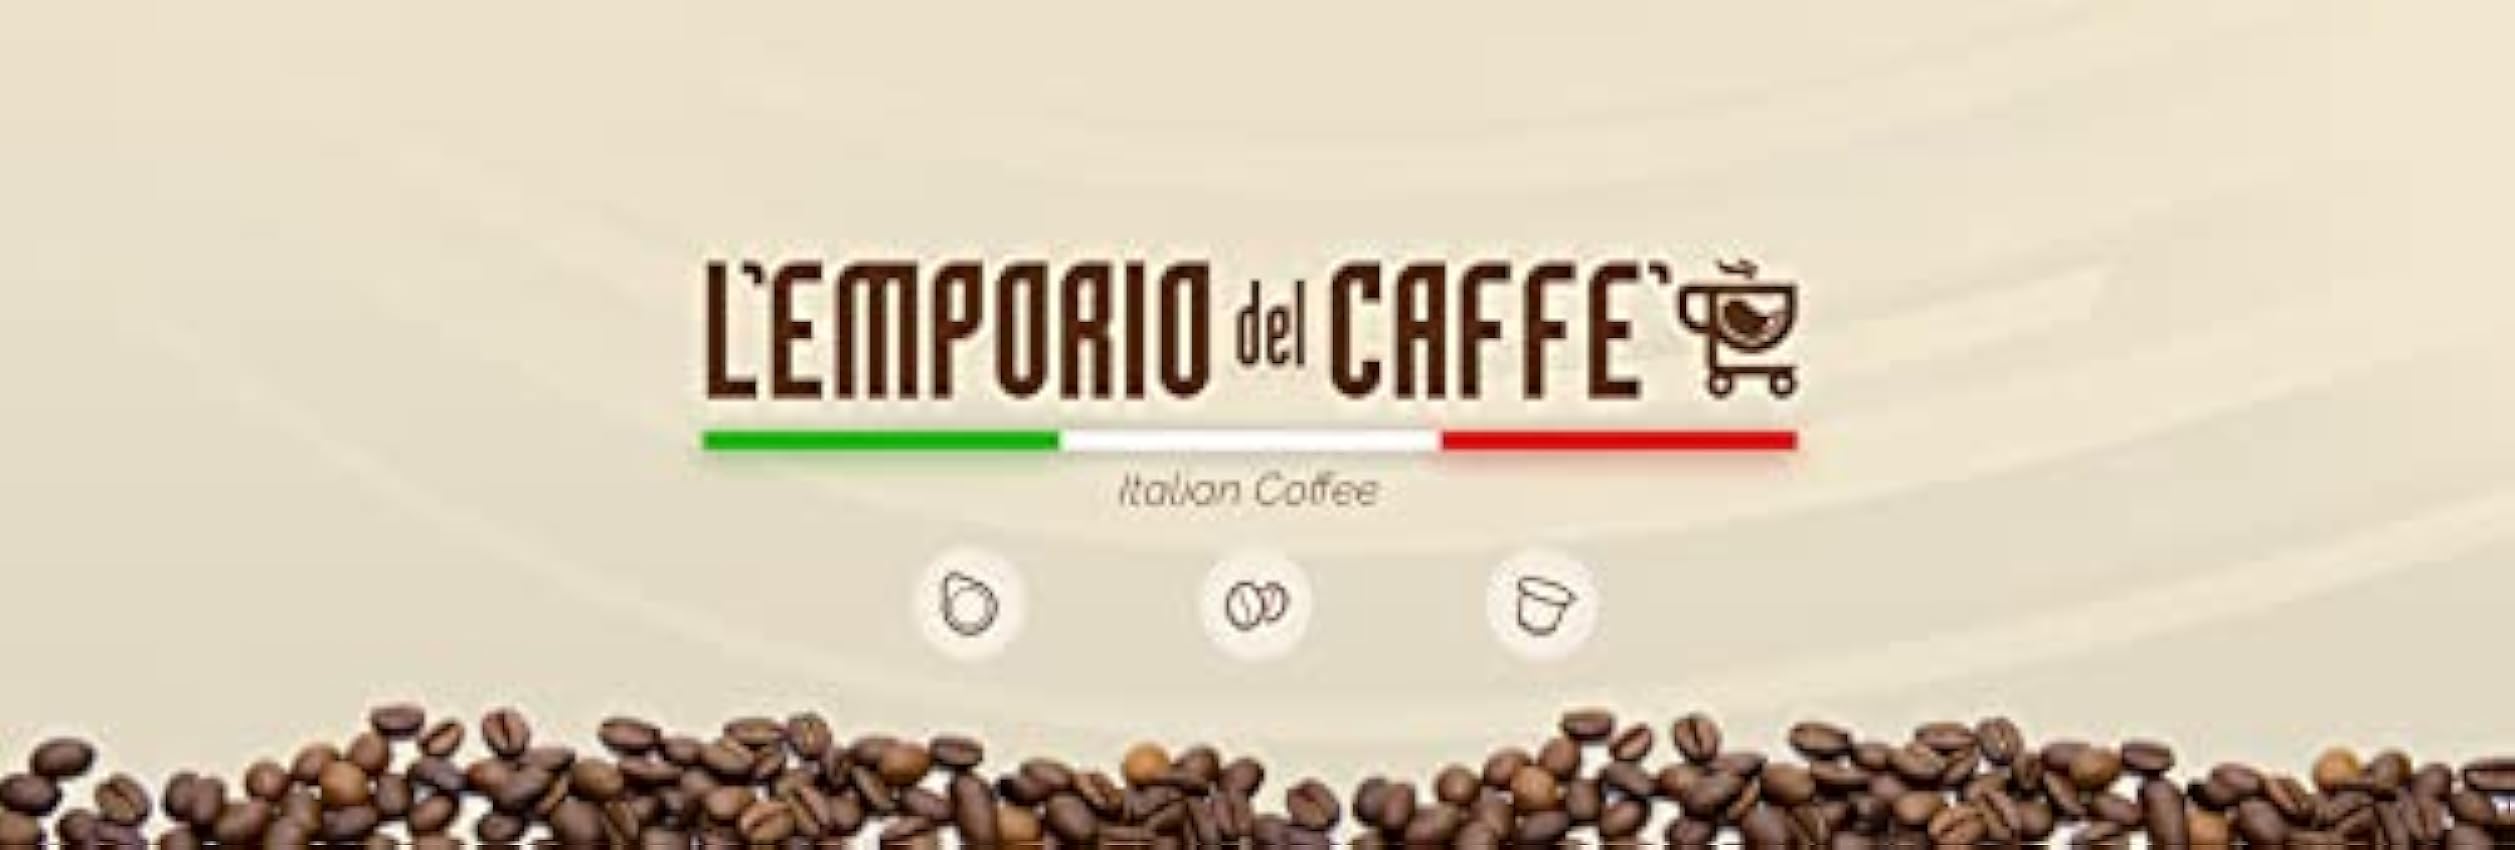 Le Café de l´Emporio Capsules Caffe Compatible avec Lavazza Espresso Point Mélange Cremosa Strong Rouge (300) kUYeTUTs